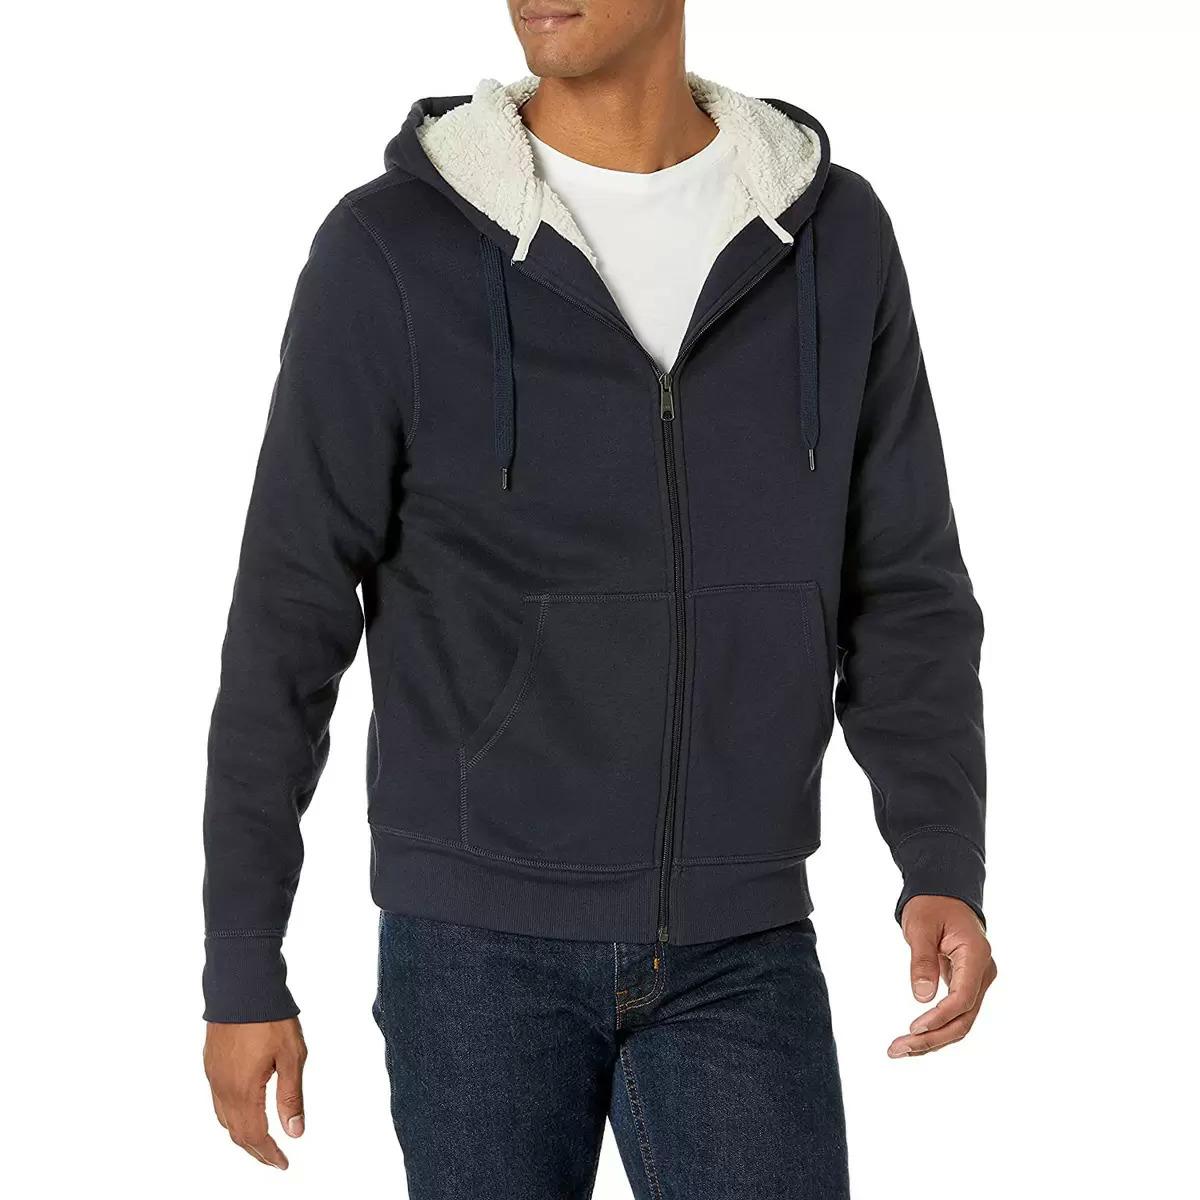 Amazon Essentials Sherpa Lined Full Zip Hooded Fleece Sweatshirt for $19.20